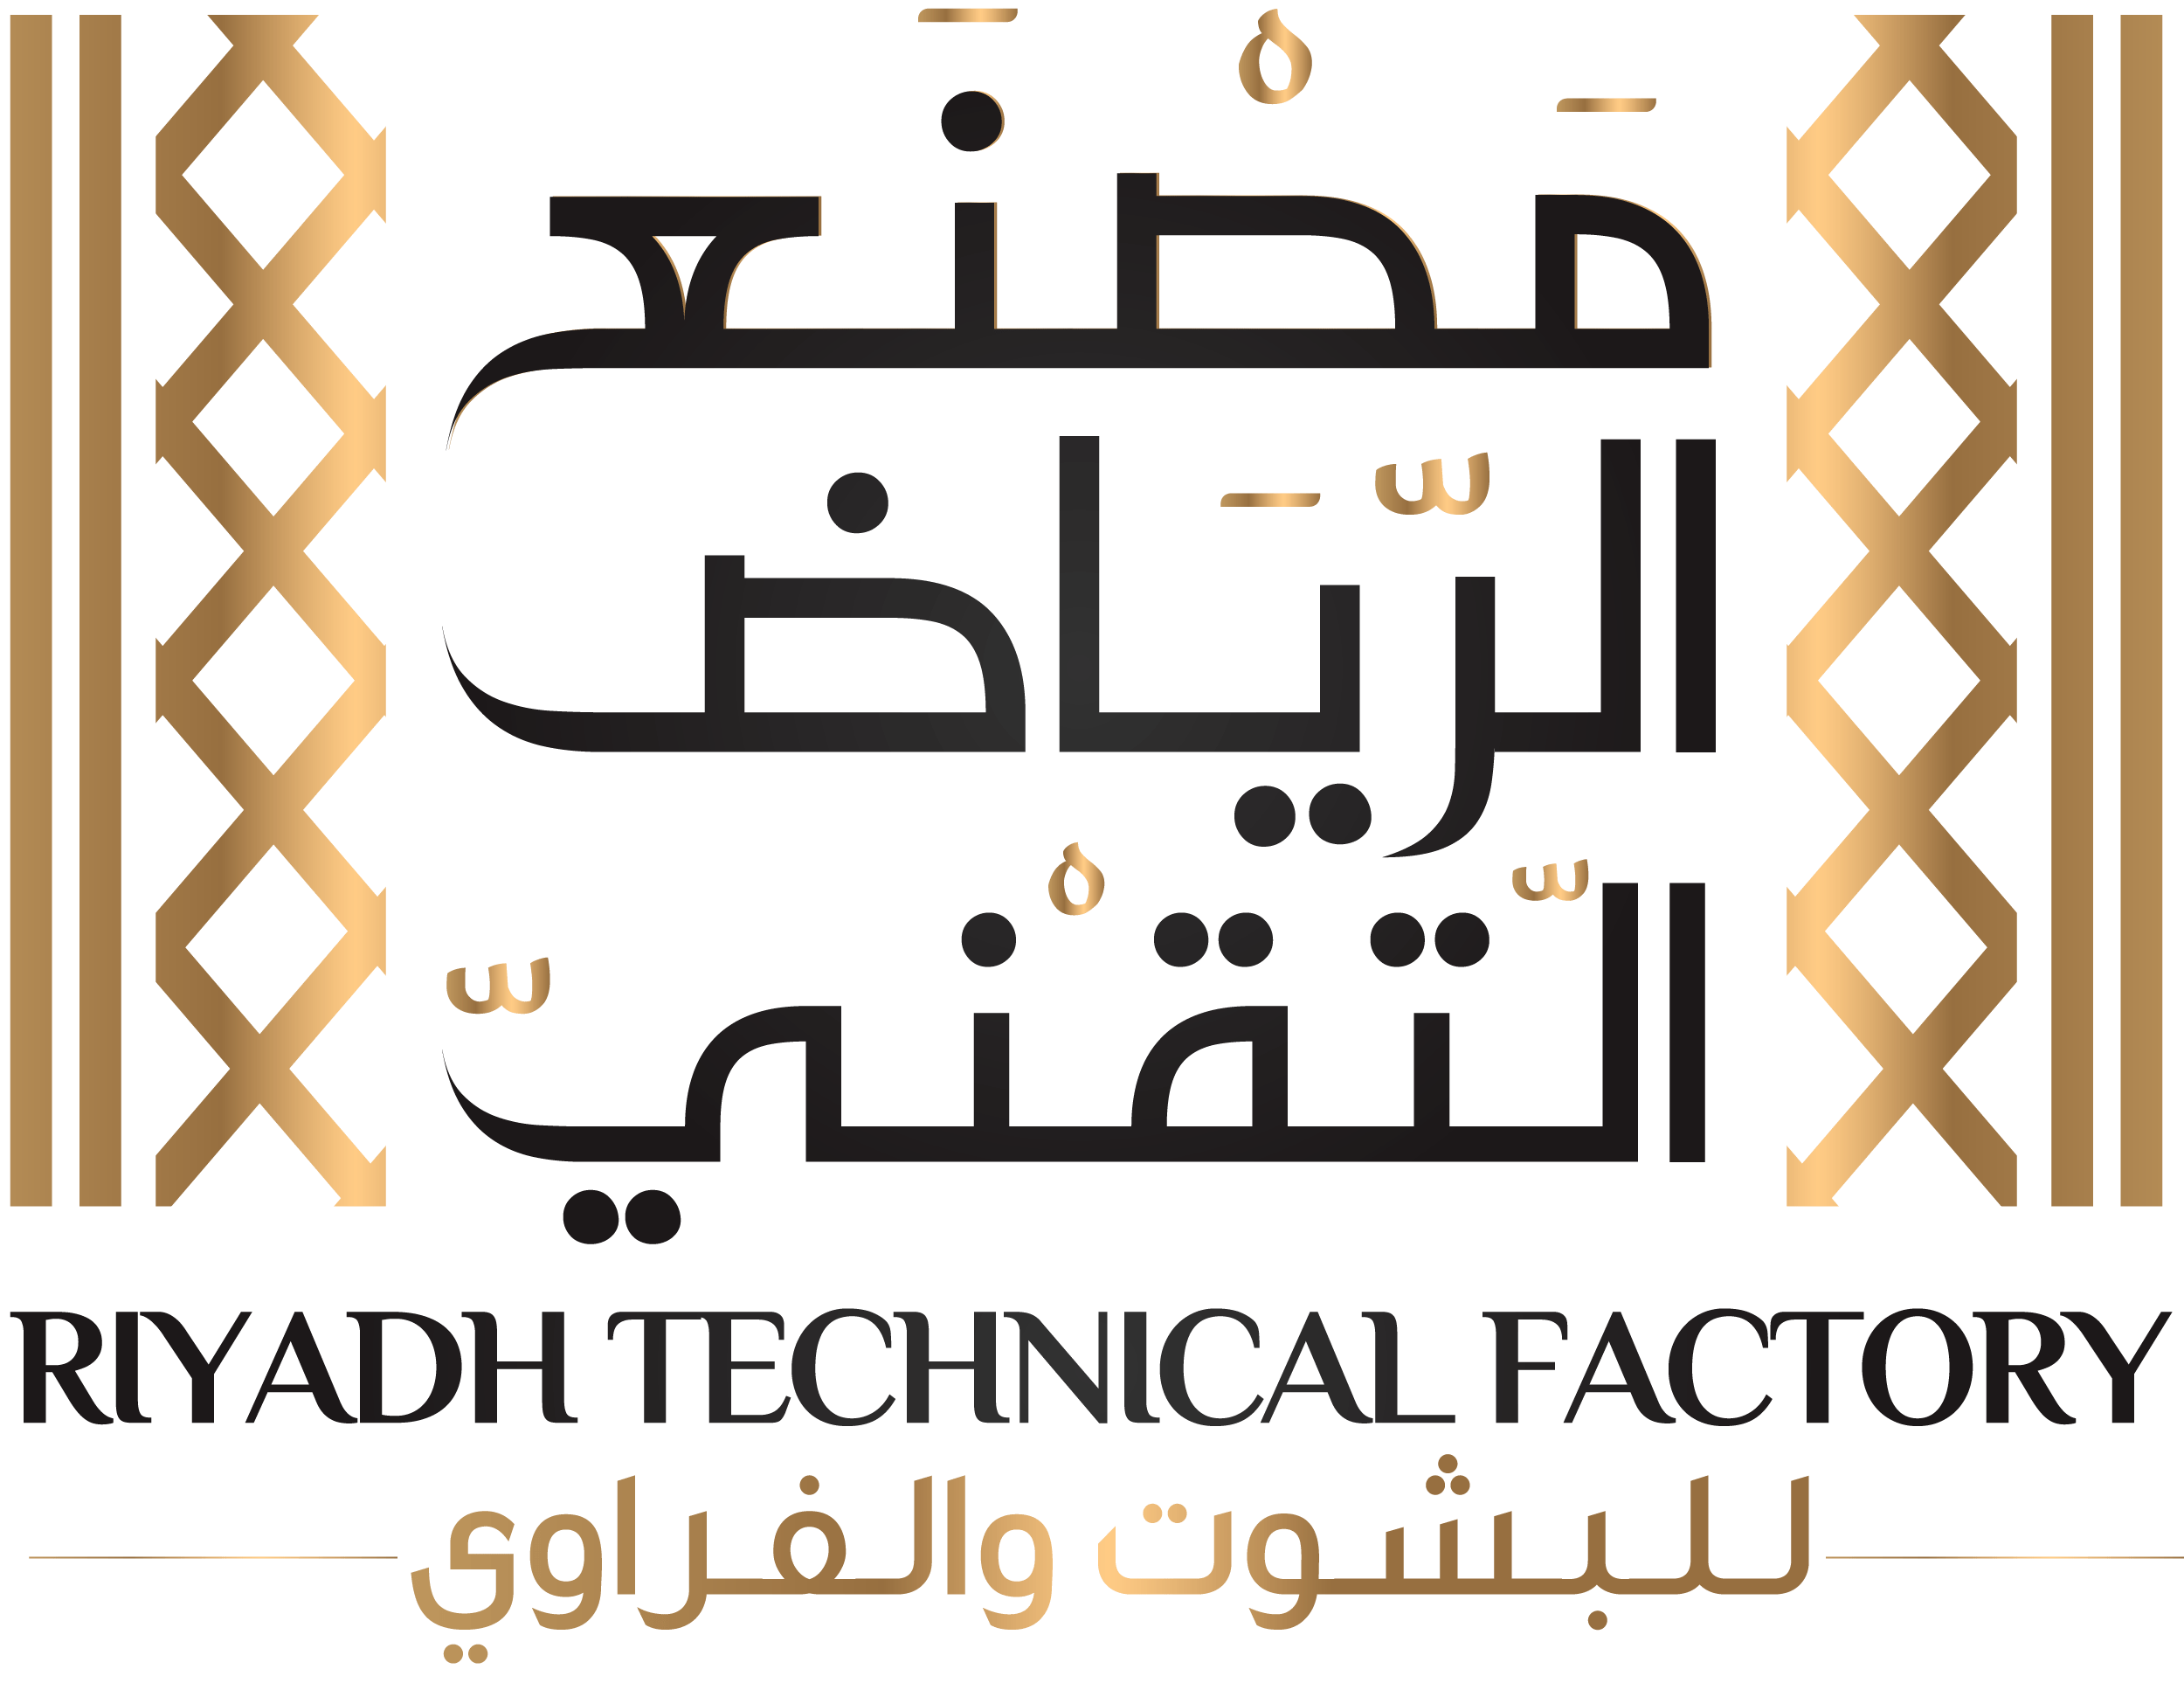 Riyadh Technical Factory